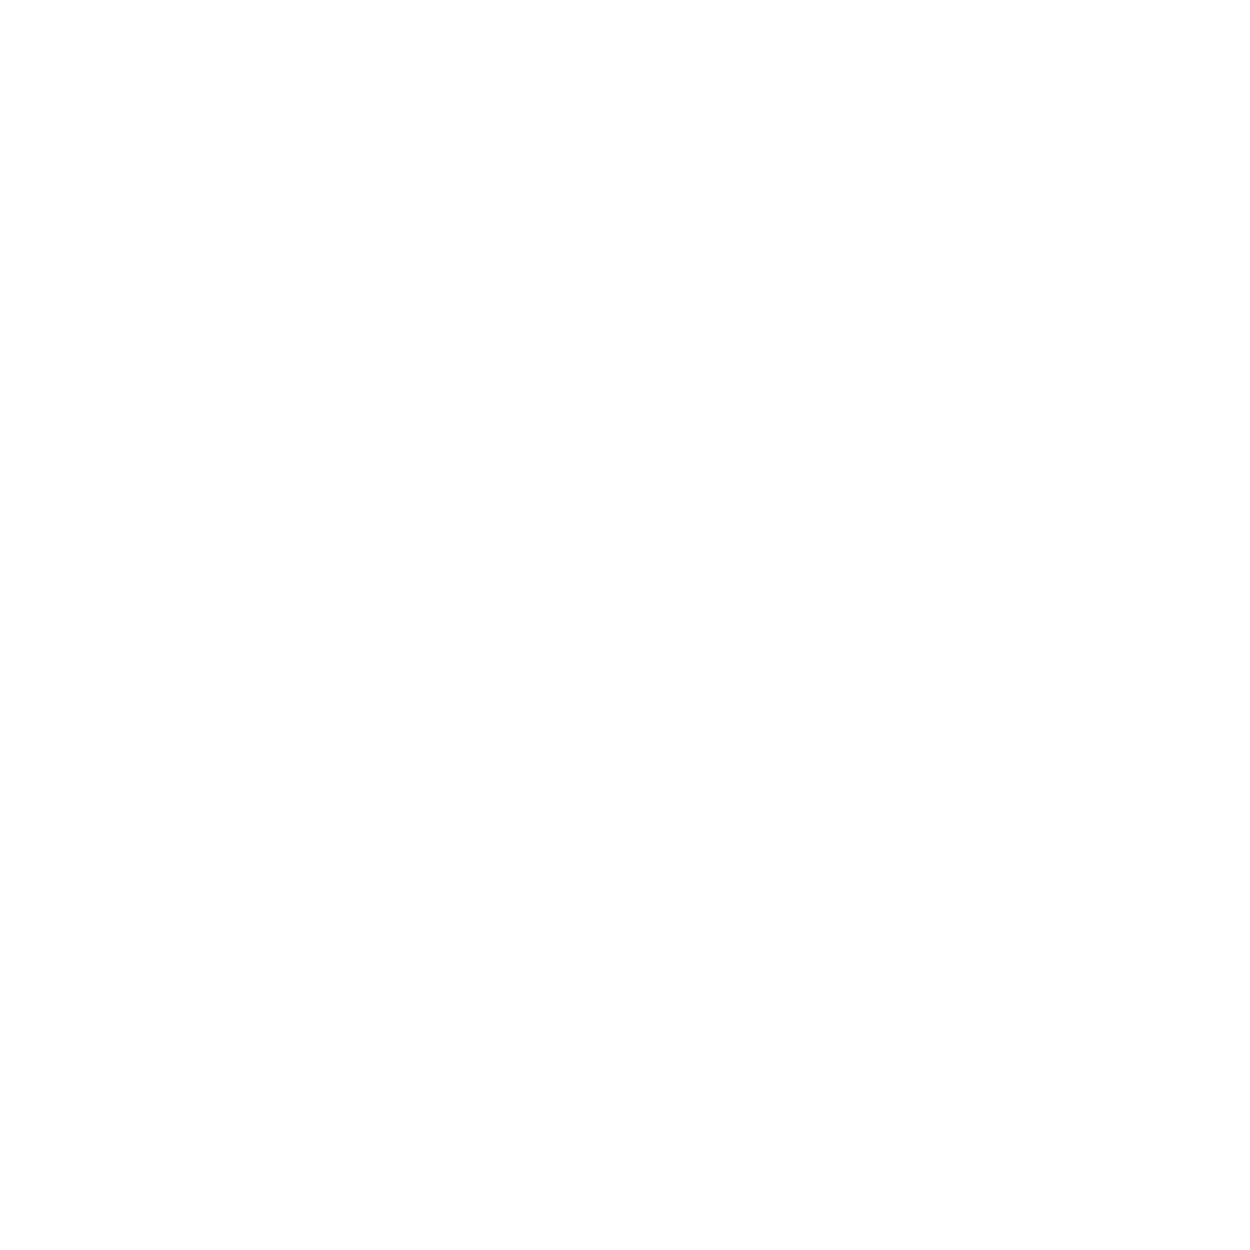 Tınaztepe University